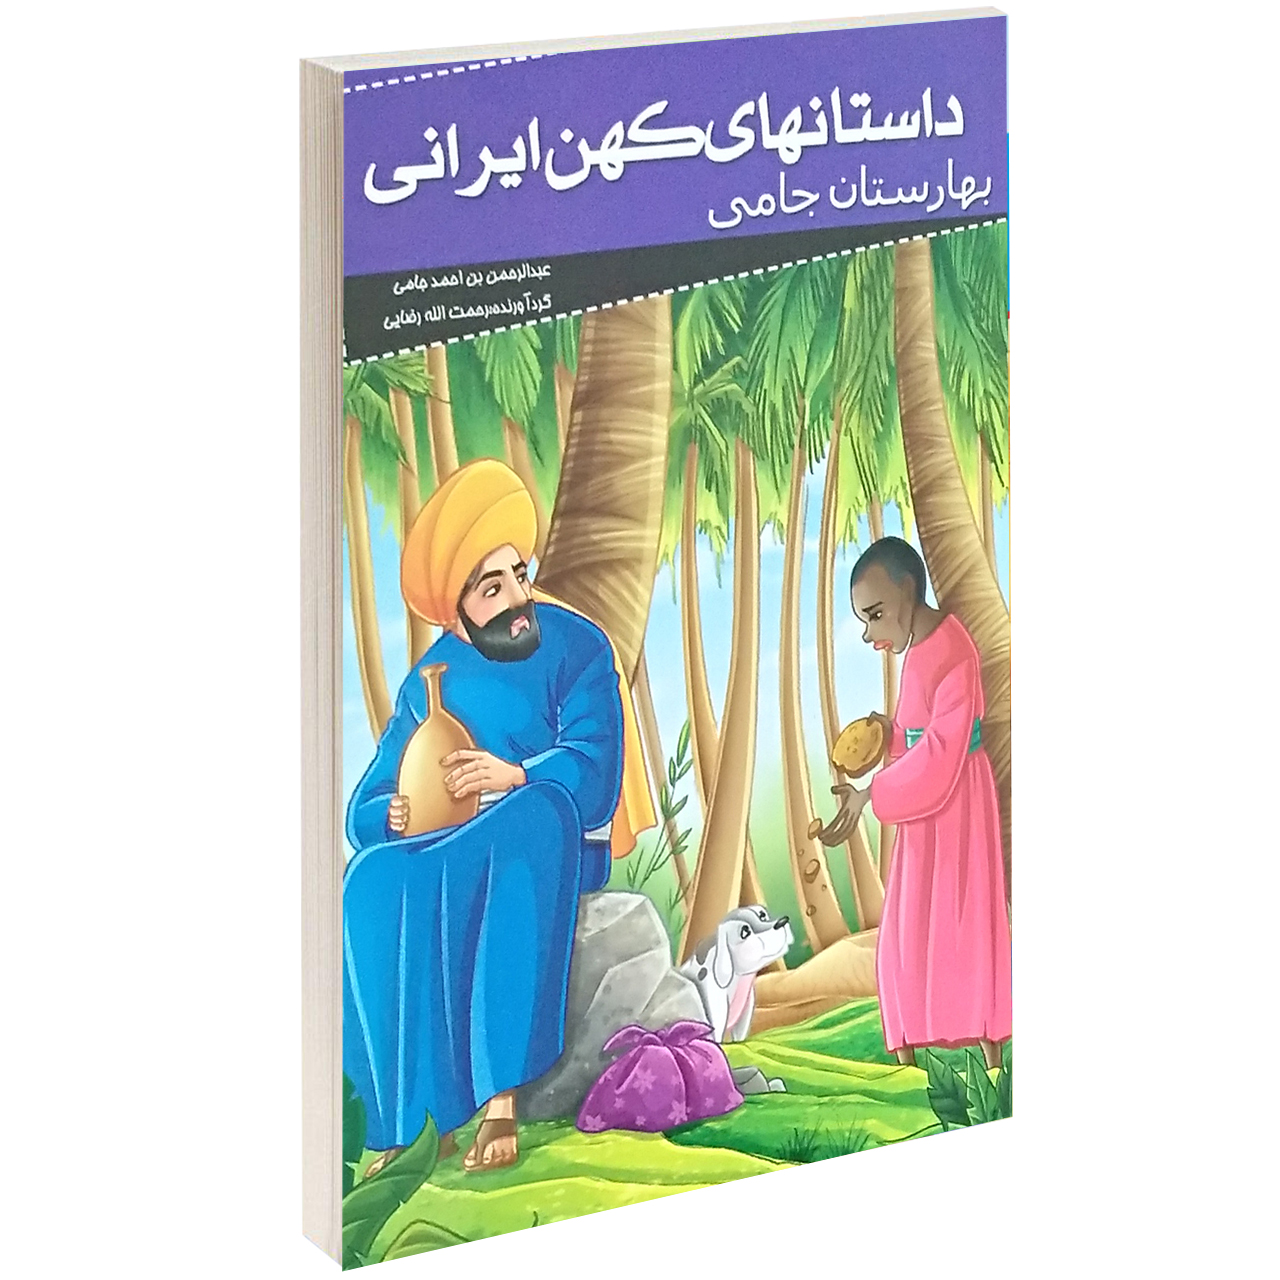  کتاب داستانهای کهن ایرانی بهارستان جامی اثر عبدالرحمان جامی